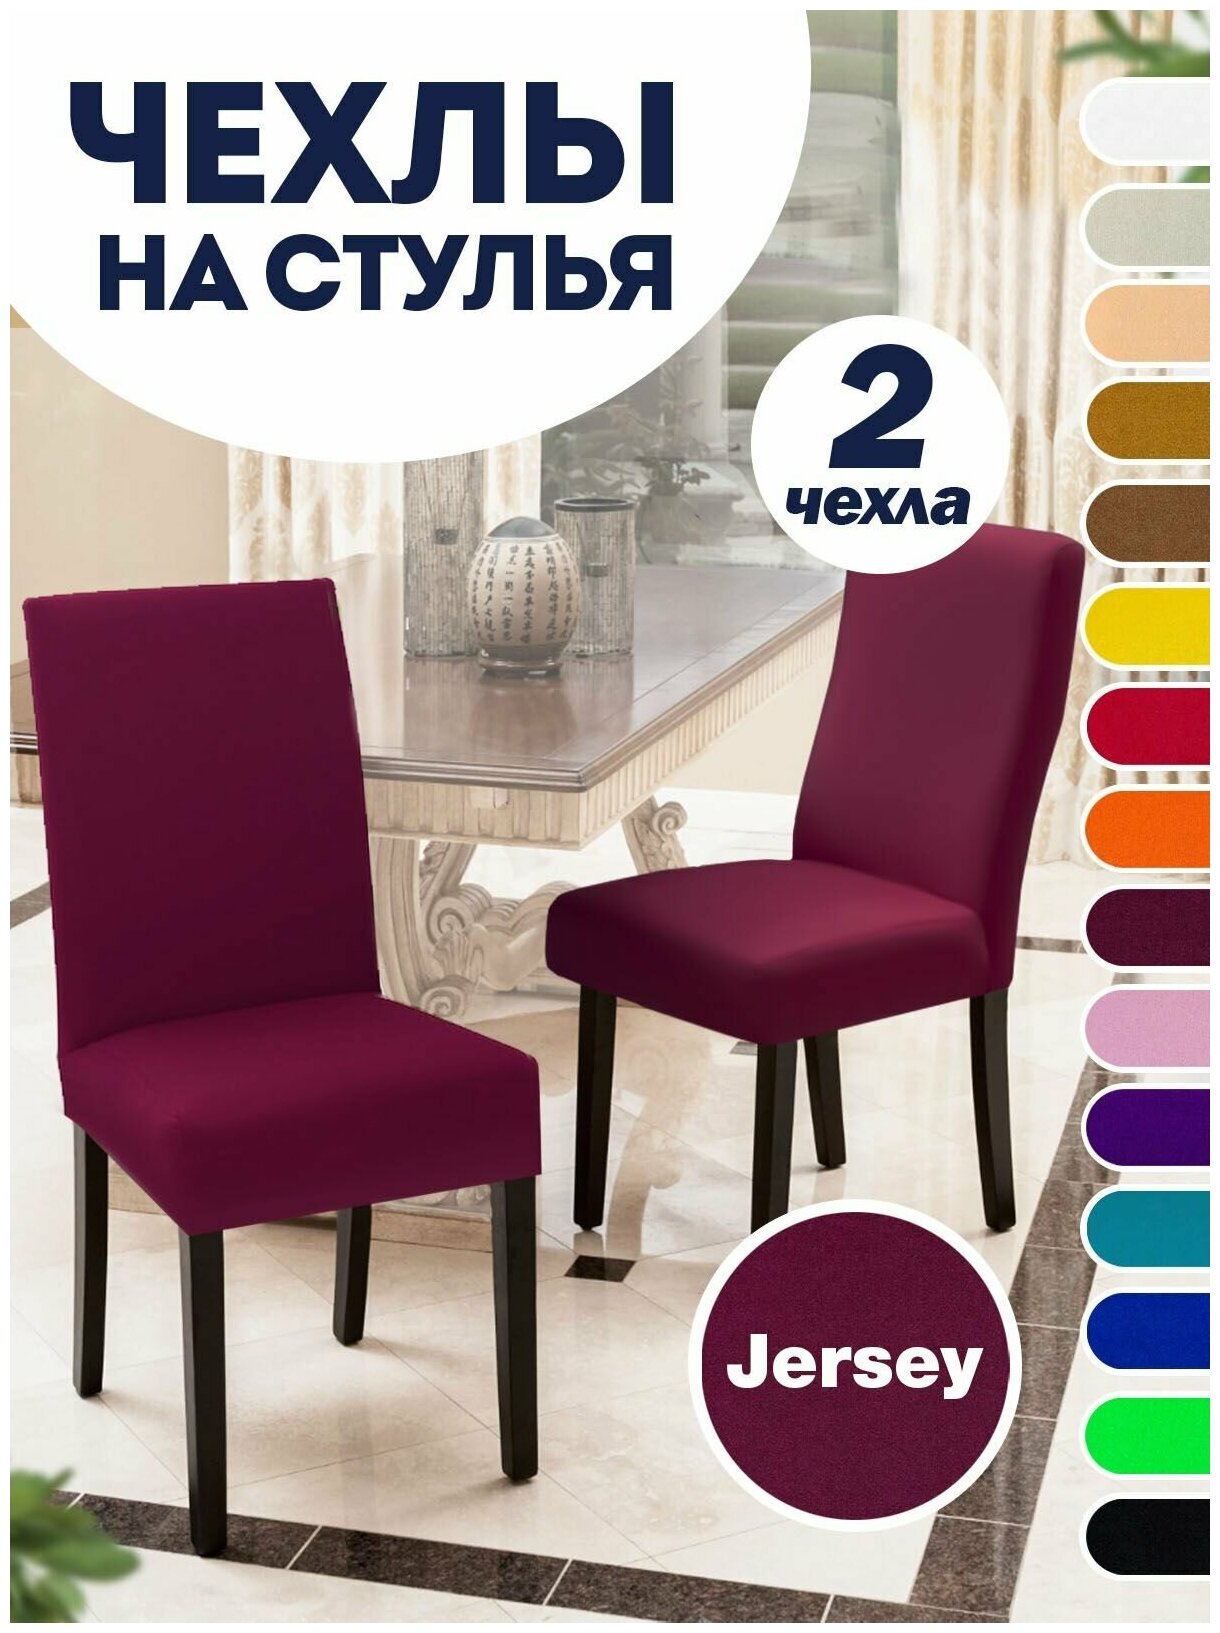 Чехол на стул, чехол для стула со спинкой, Комплект 2 шт, чехлы для мебели, Коллекция "Jersey" Бордовый